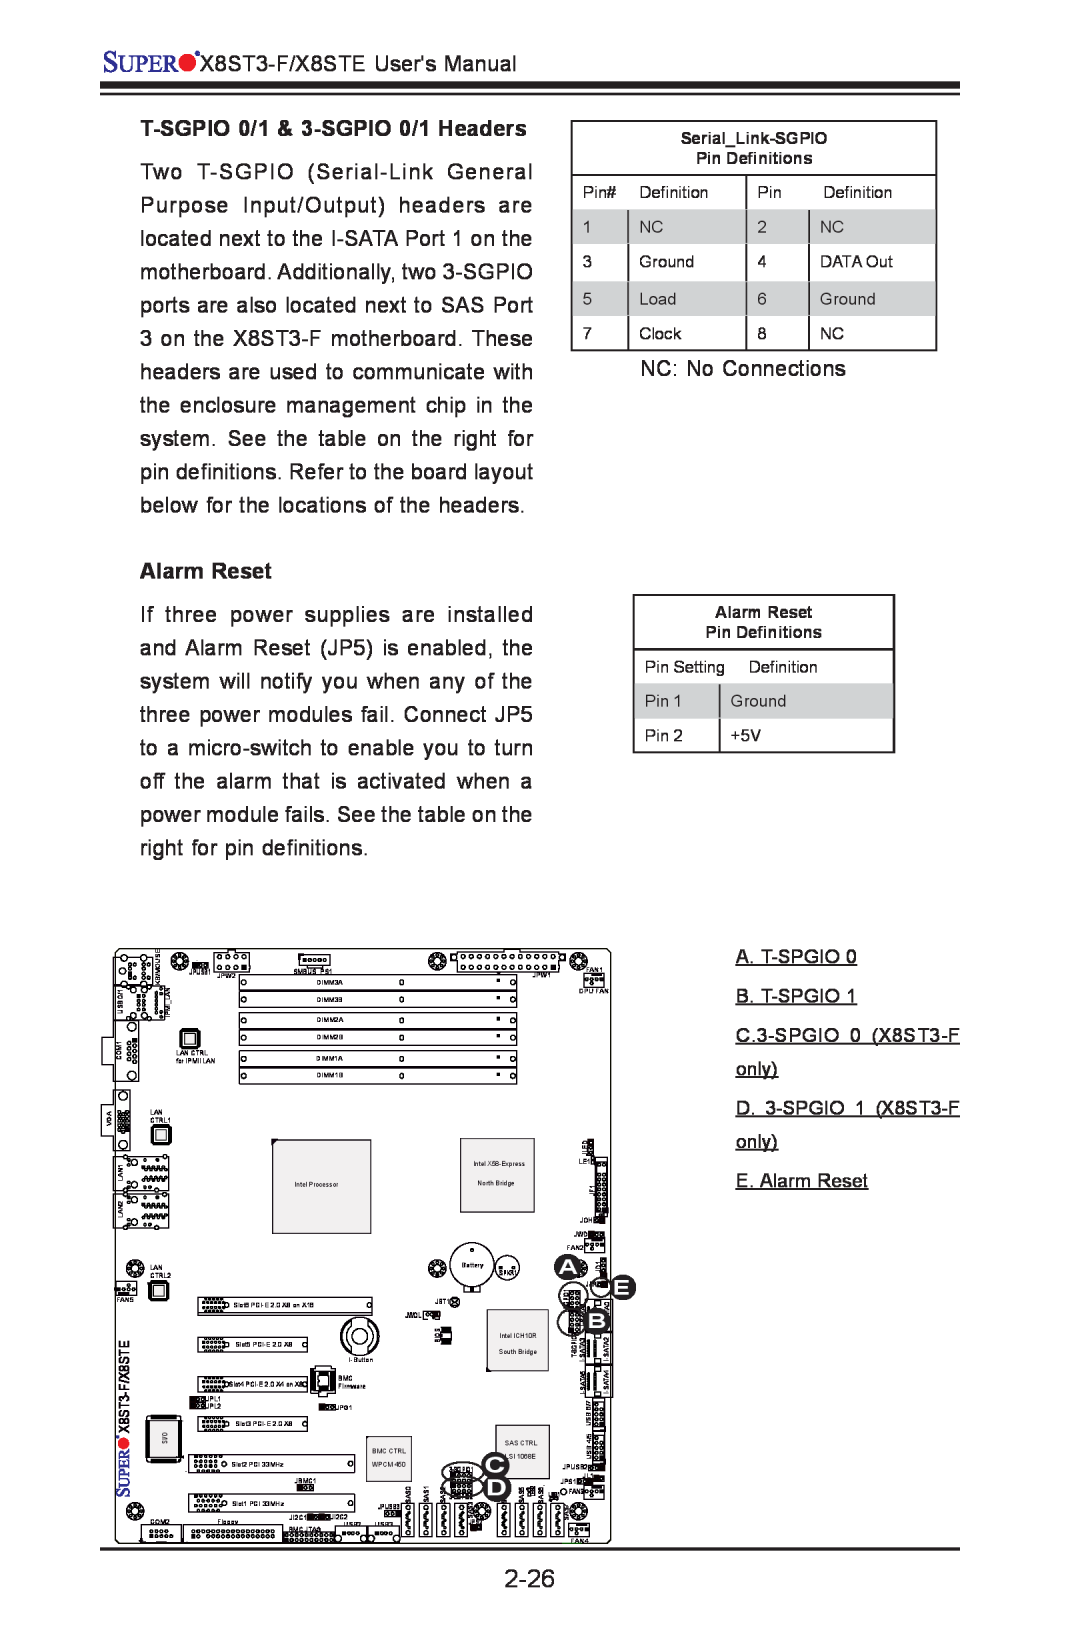 SUPER MICRO Computer X8ST3-F, X8STE user manual 2-26, T-SGPIO 0/1 & 3-SGPIO 0/1 Headers, Alarm Reset 